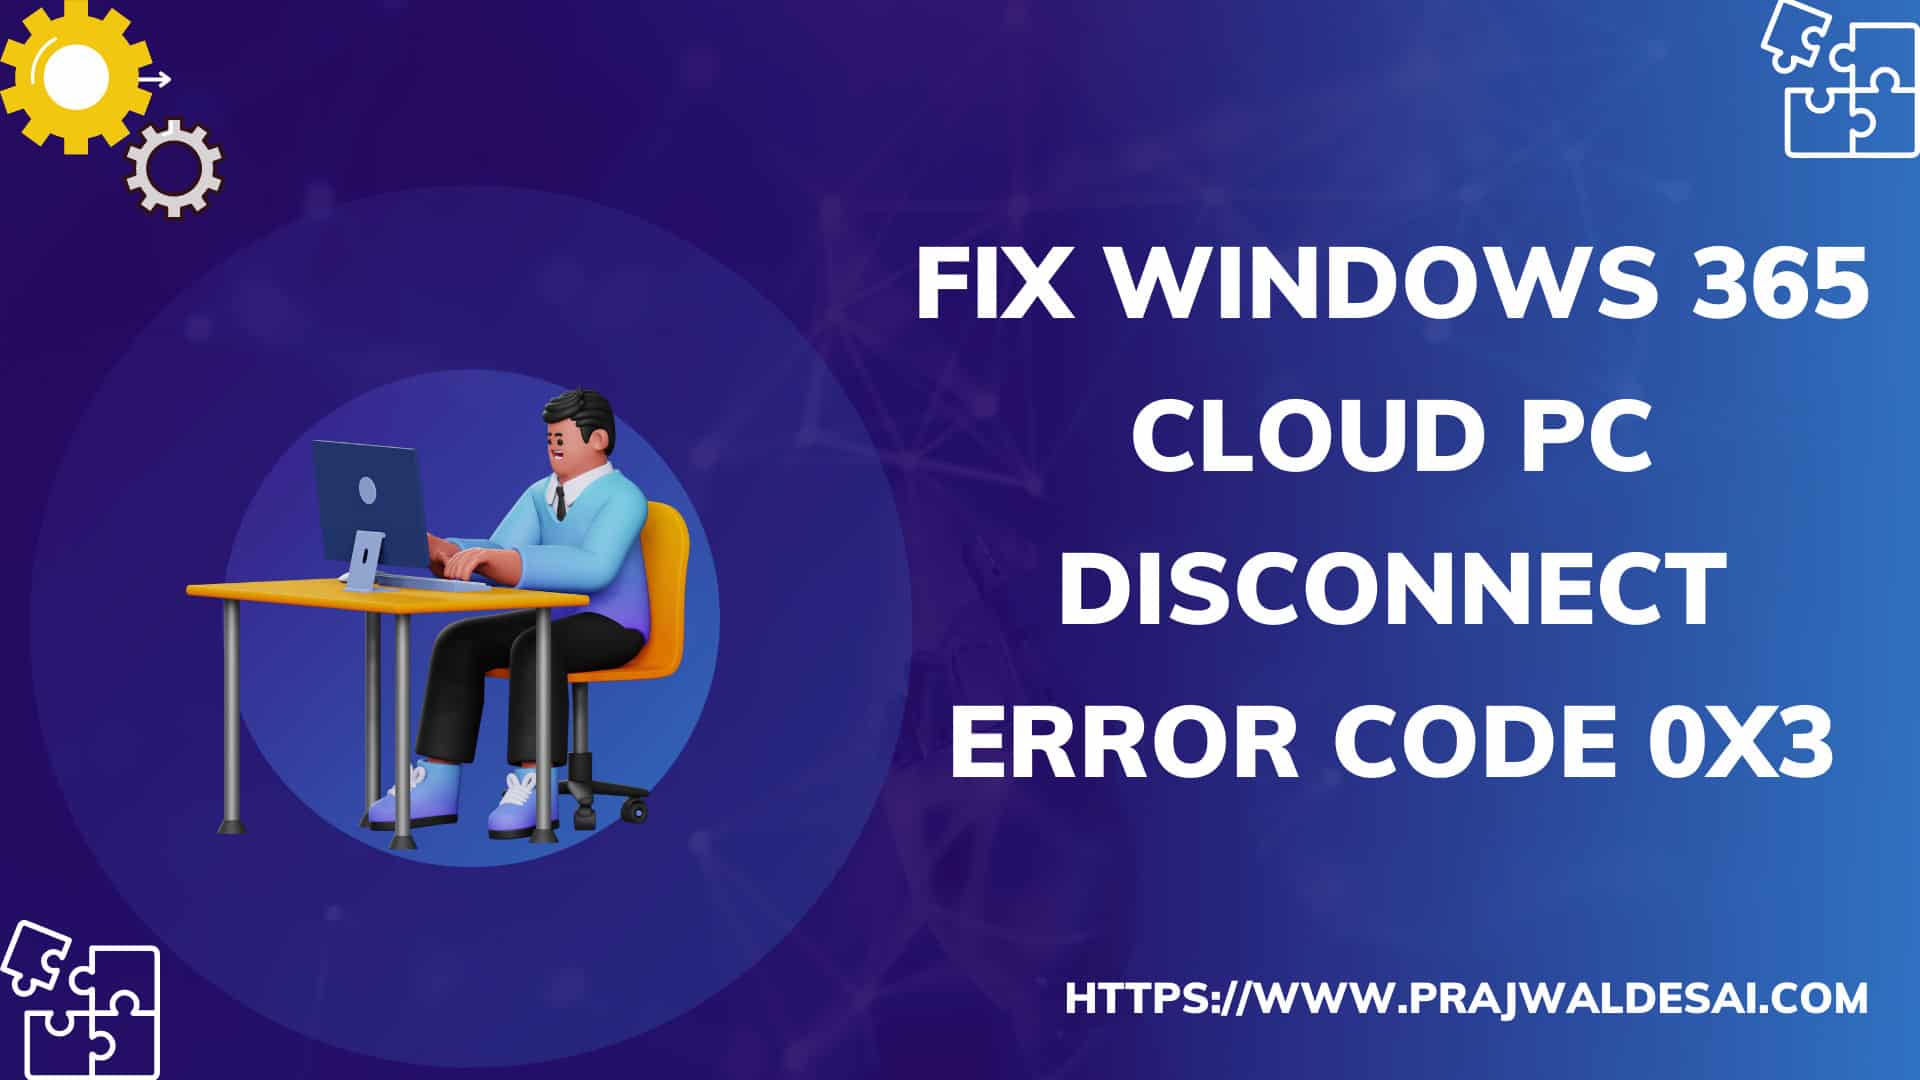 修复Windows 365云PC欢迎您~连接错误码0x3的问题